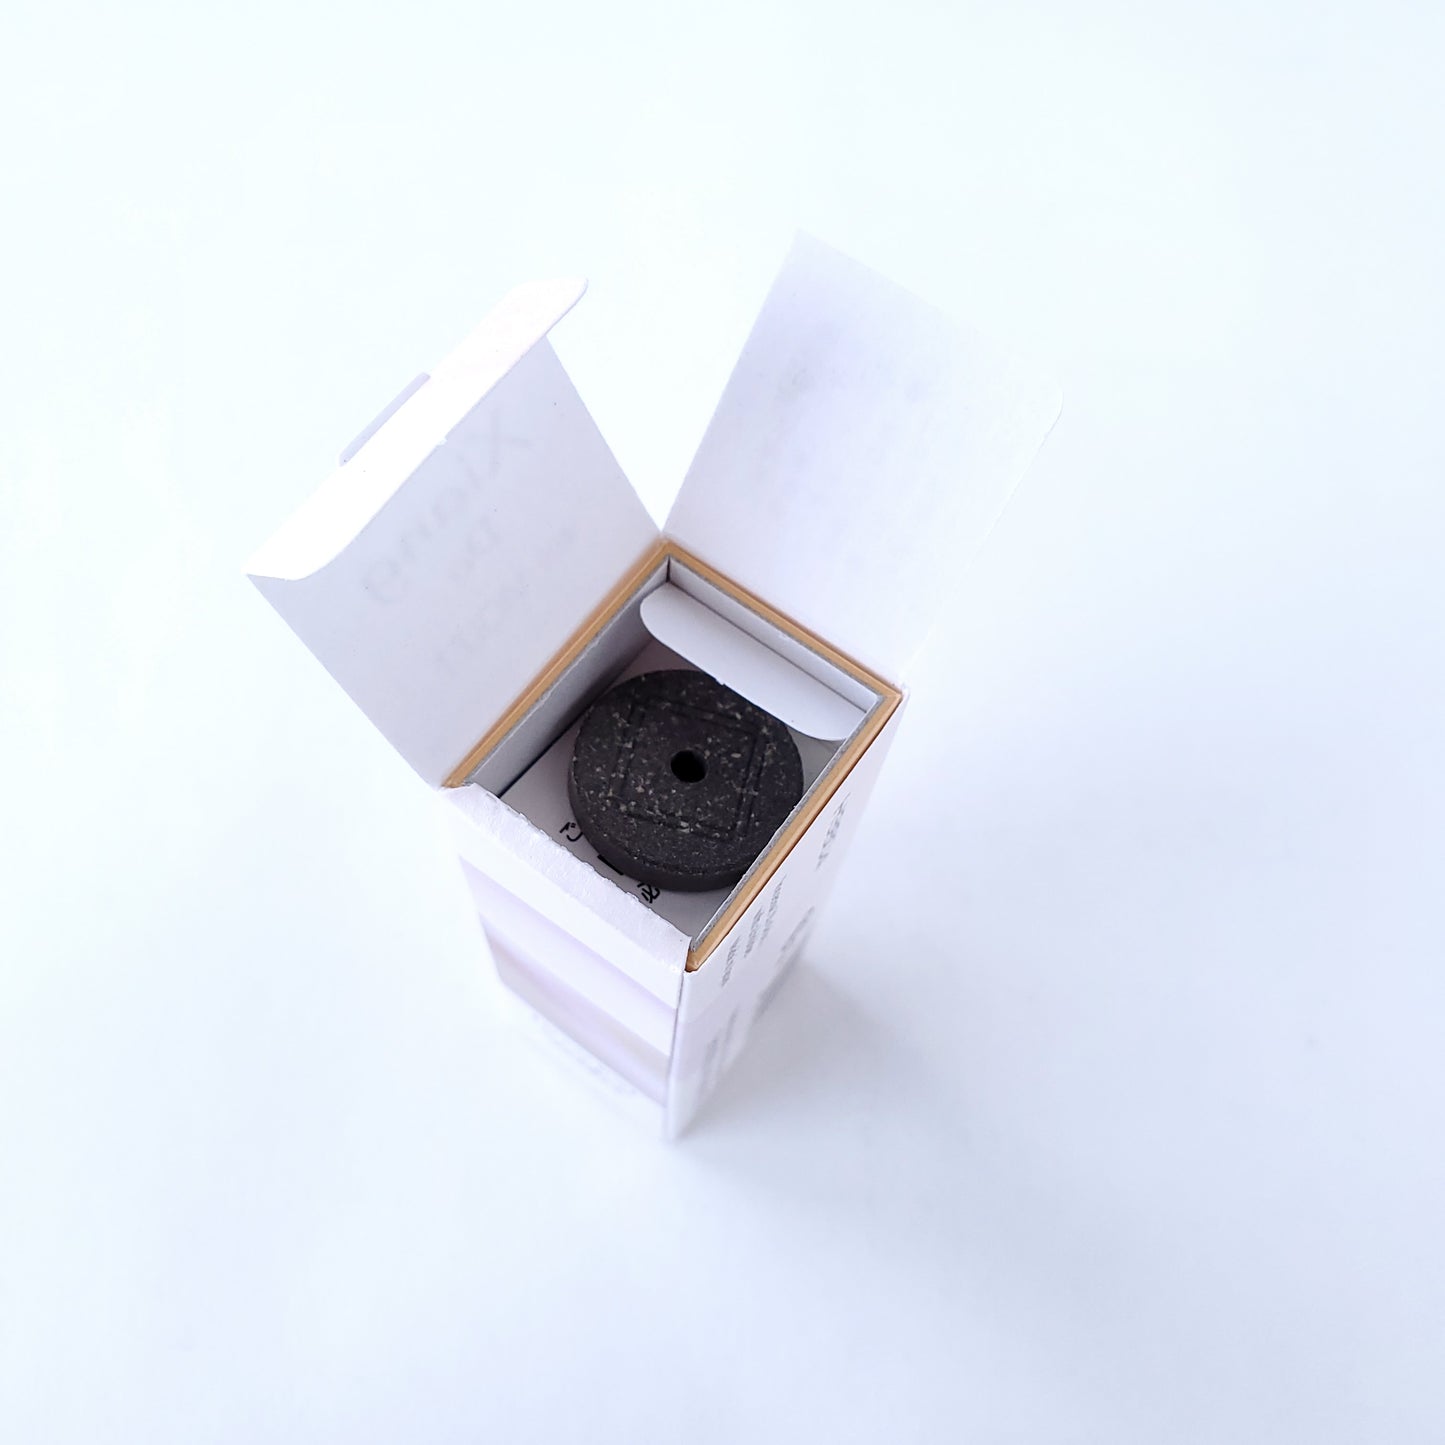 松栄堂のお香 シァンドゥ・バイオレット Xiang Do 京都 スティック アロマ インセンス 日本製